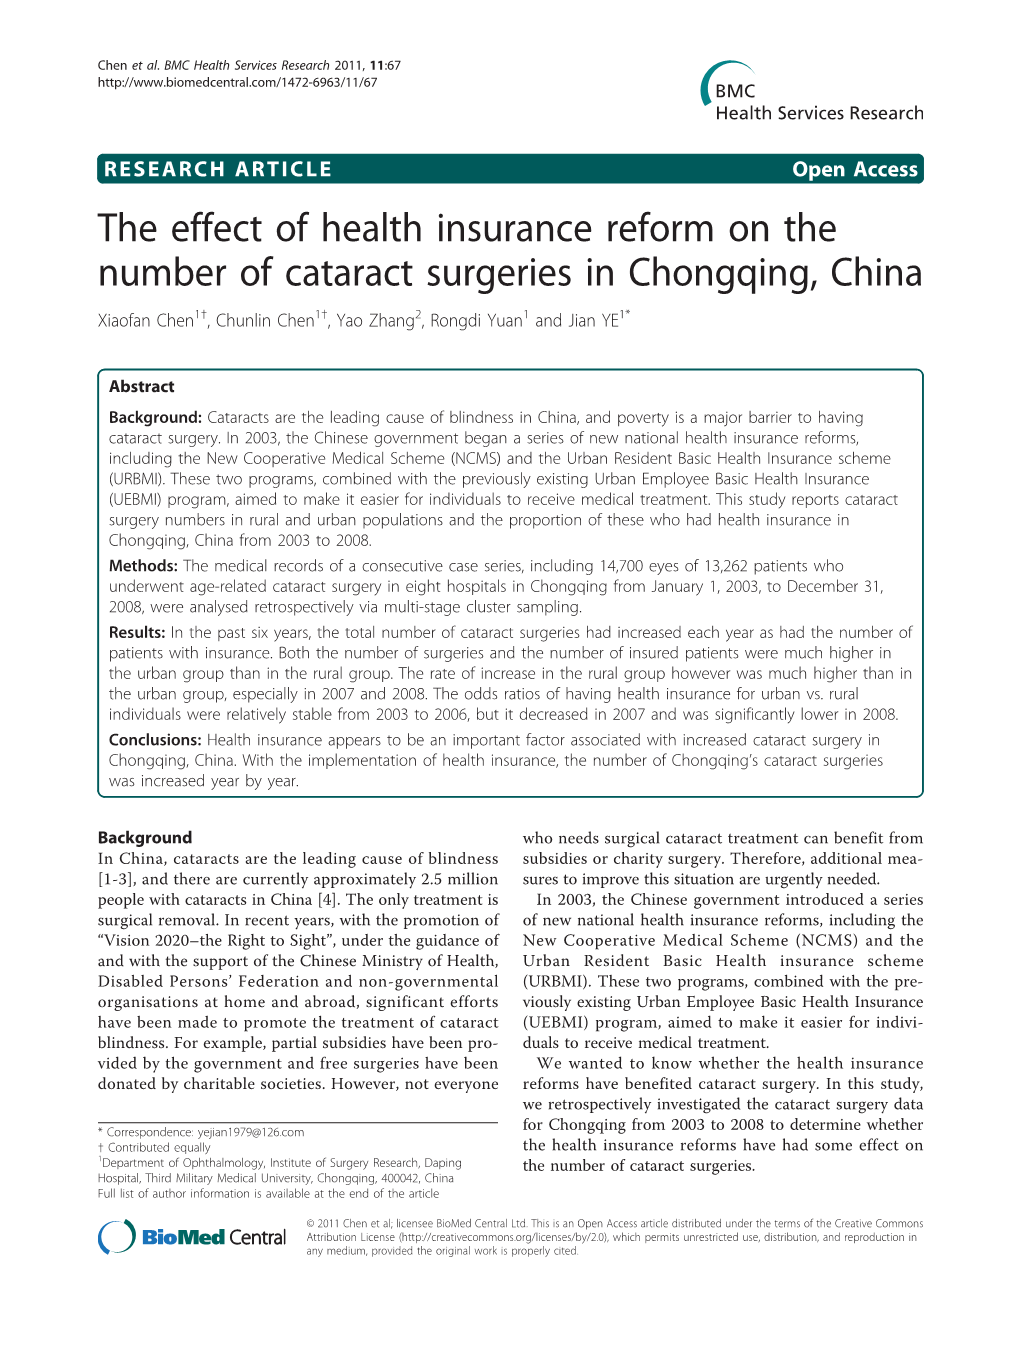 The Effect of Health Insurance Reform on the Number of Cataract Surgeries in Chongqing, China Xiaofan Chen1†, Chunlin Chen1†, Yao Zhang2, Rongdi Yuan1 and Jian YE1*